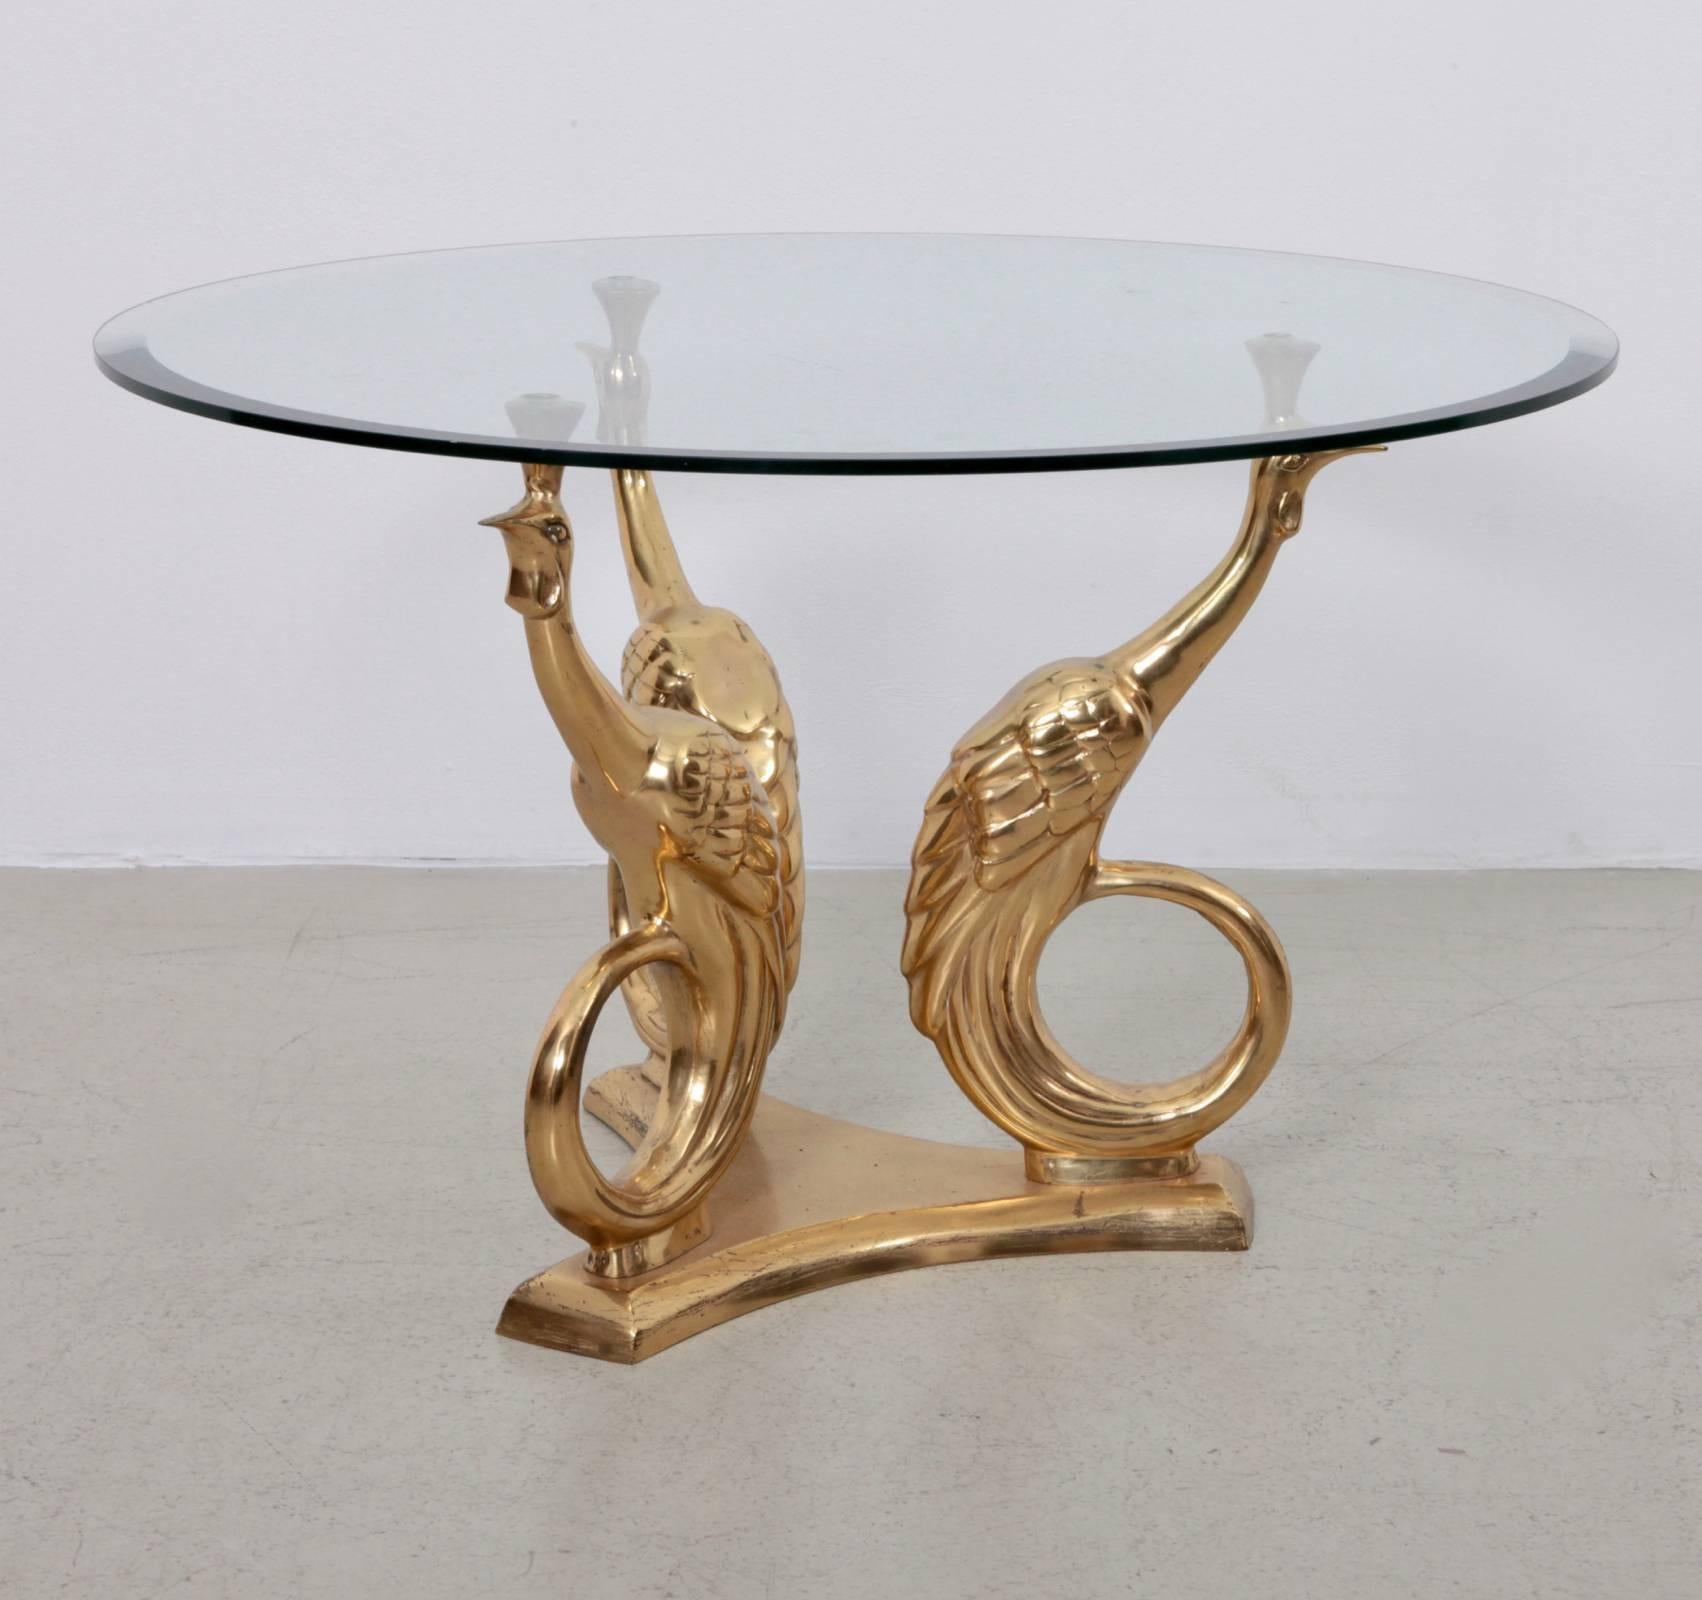 Sehr eleganter Couchtisch oder Beistelltisch aus Messing und Glas. Die Glastischplatte wird von drei Pfauen gehalten. Der Tisch ist ein echter Hingucker. Die gleiche Tabelle in einer anderen Form ist ebenfalls aufgeführt.

